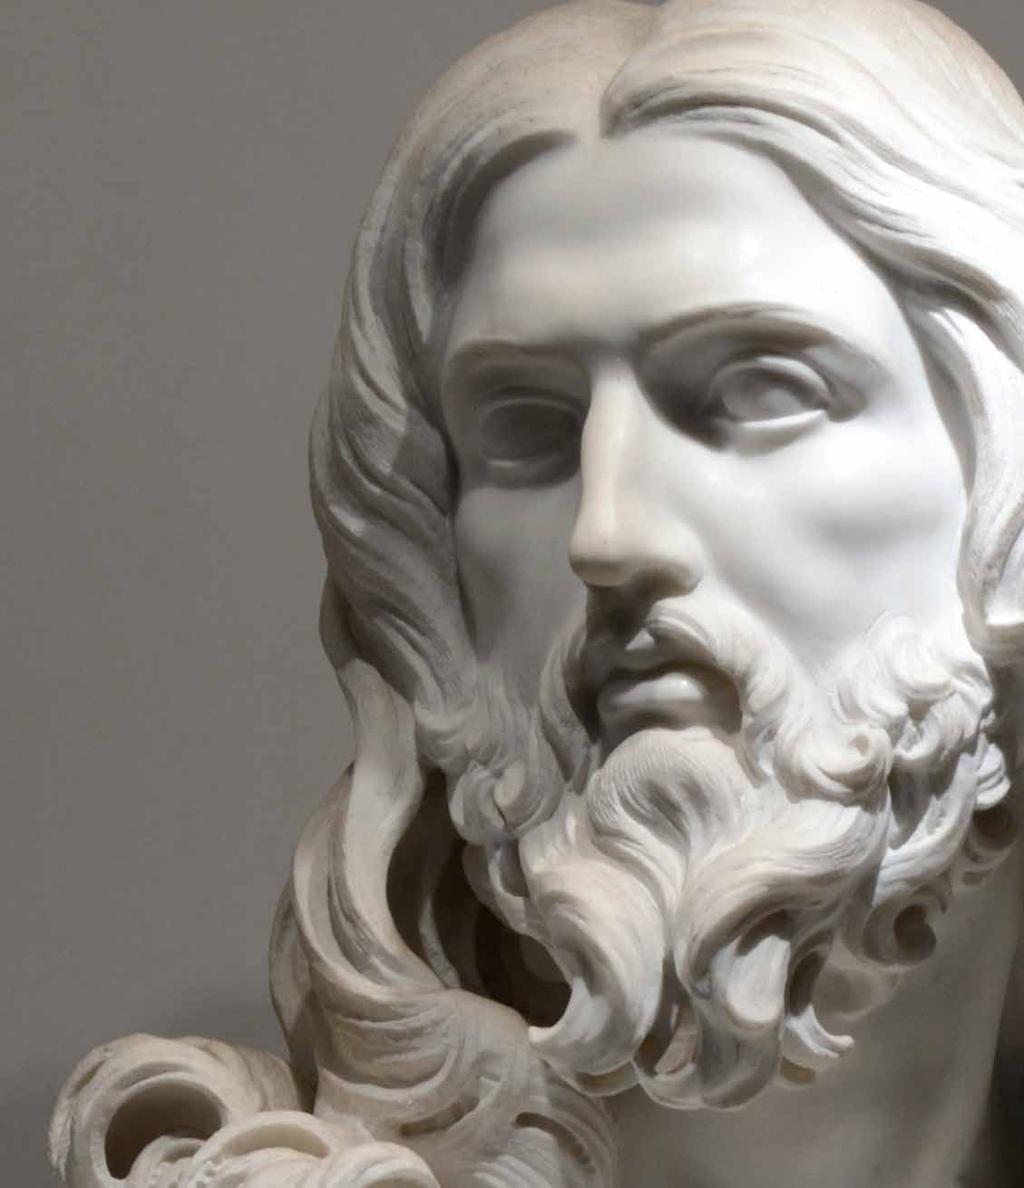 Korizma Korizma Gian Lorenzo Bernini: Salvator mundi Mogli bismo reći da je Isus cijeloga svoga života i djelovanja skidao s ljudi maske, obrazine.